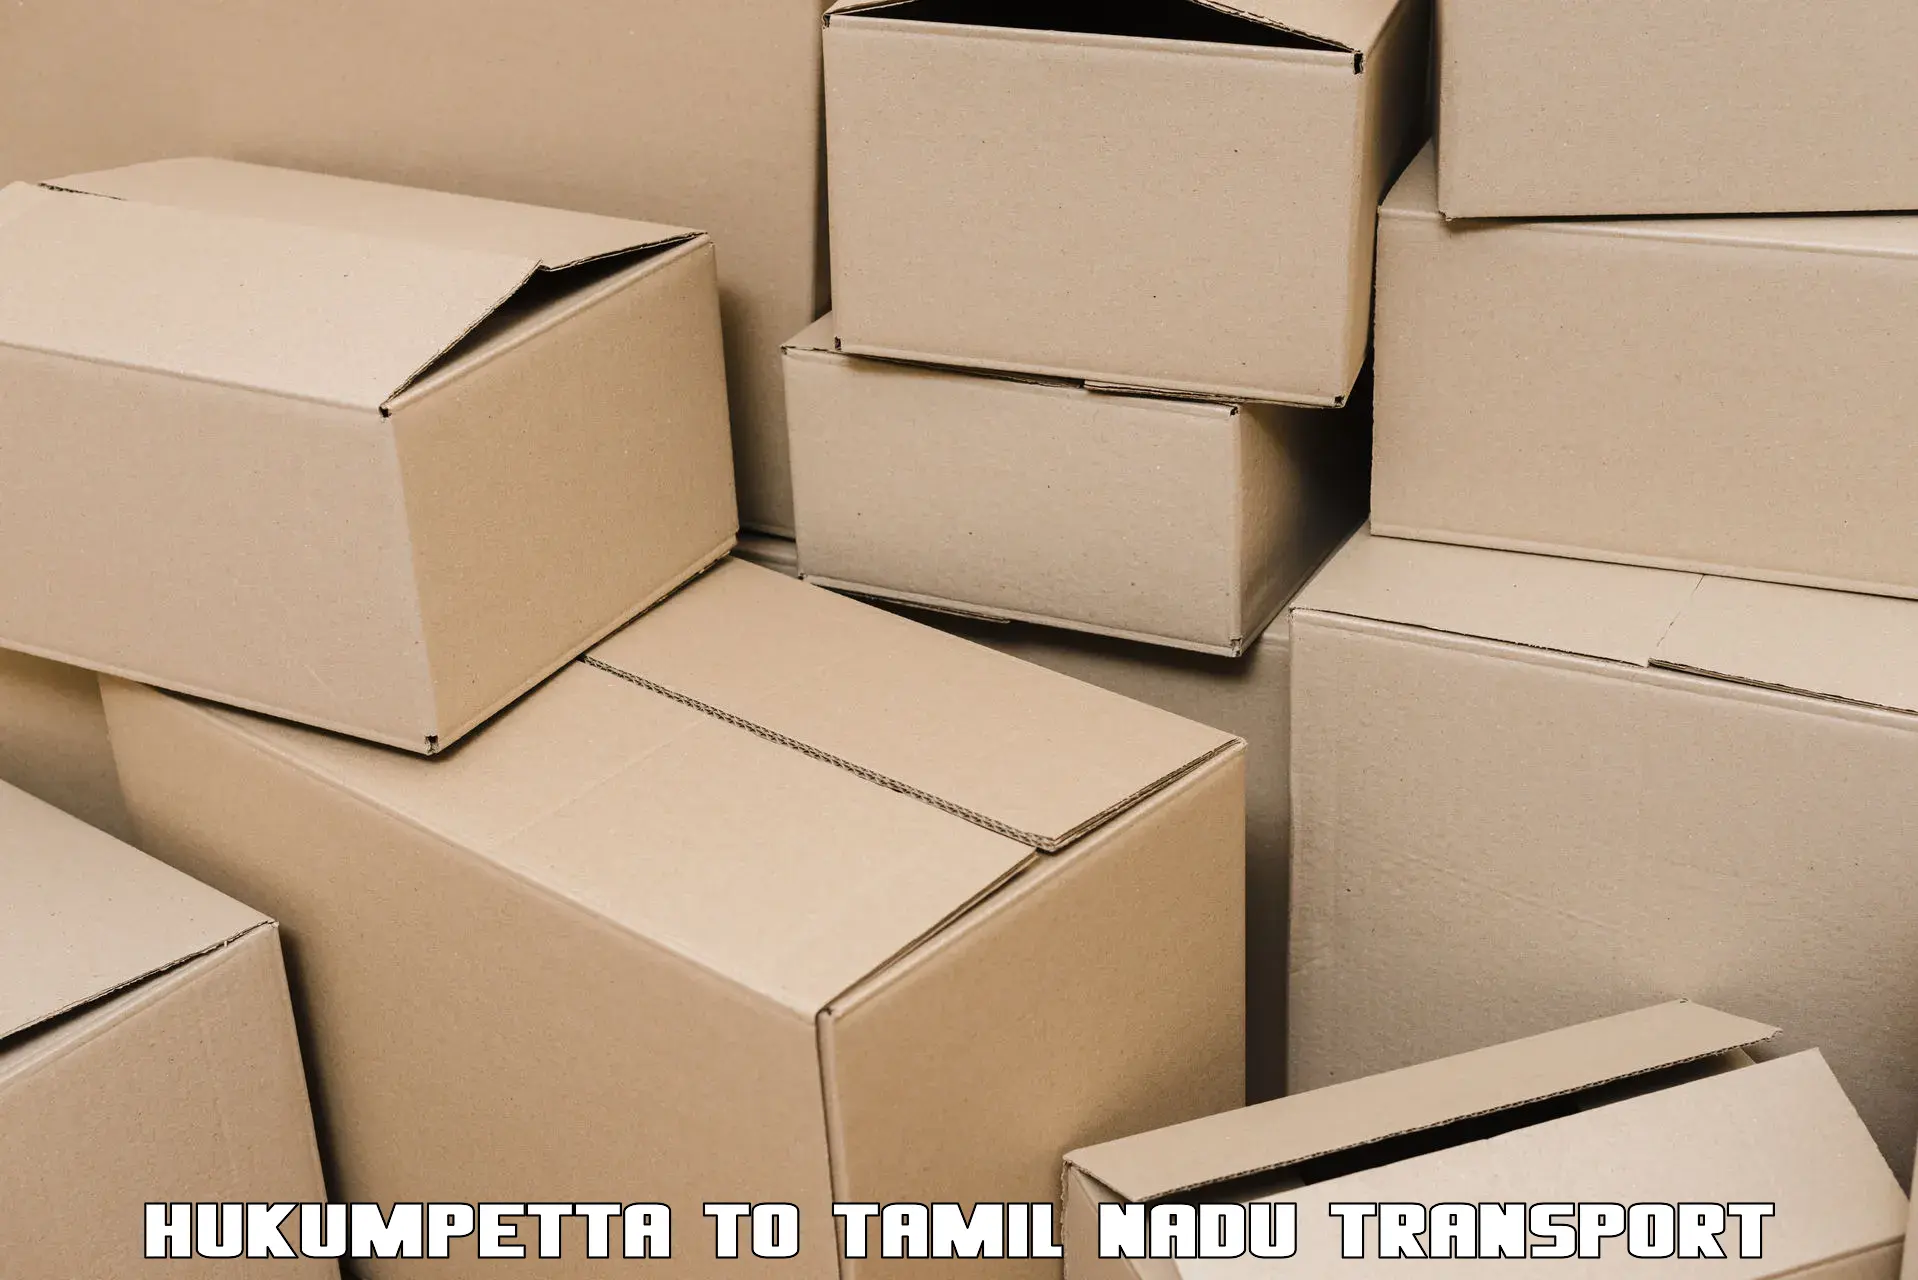 Domestic transport services in Hukumpetta to Tamil Nadu